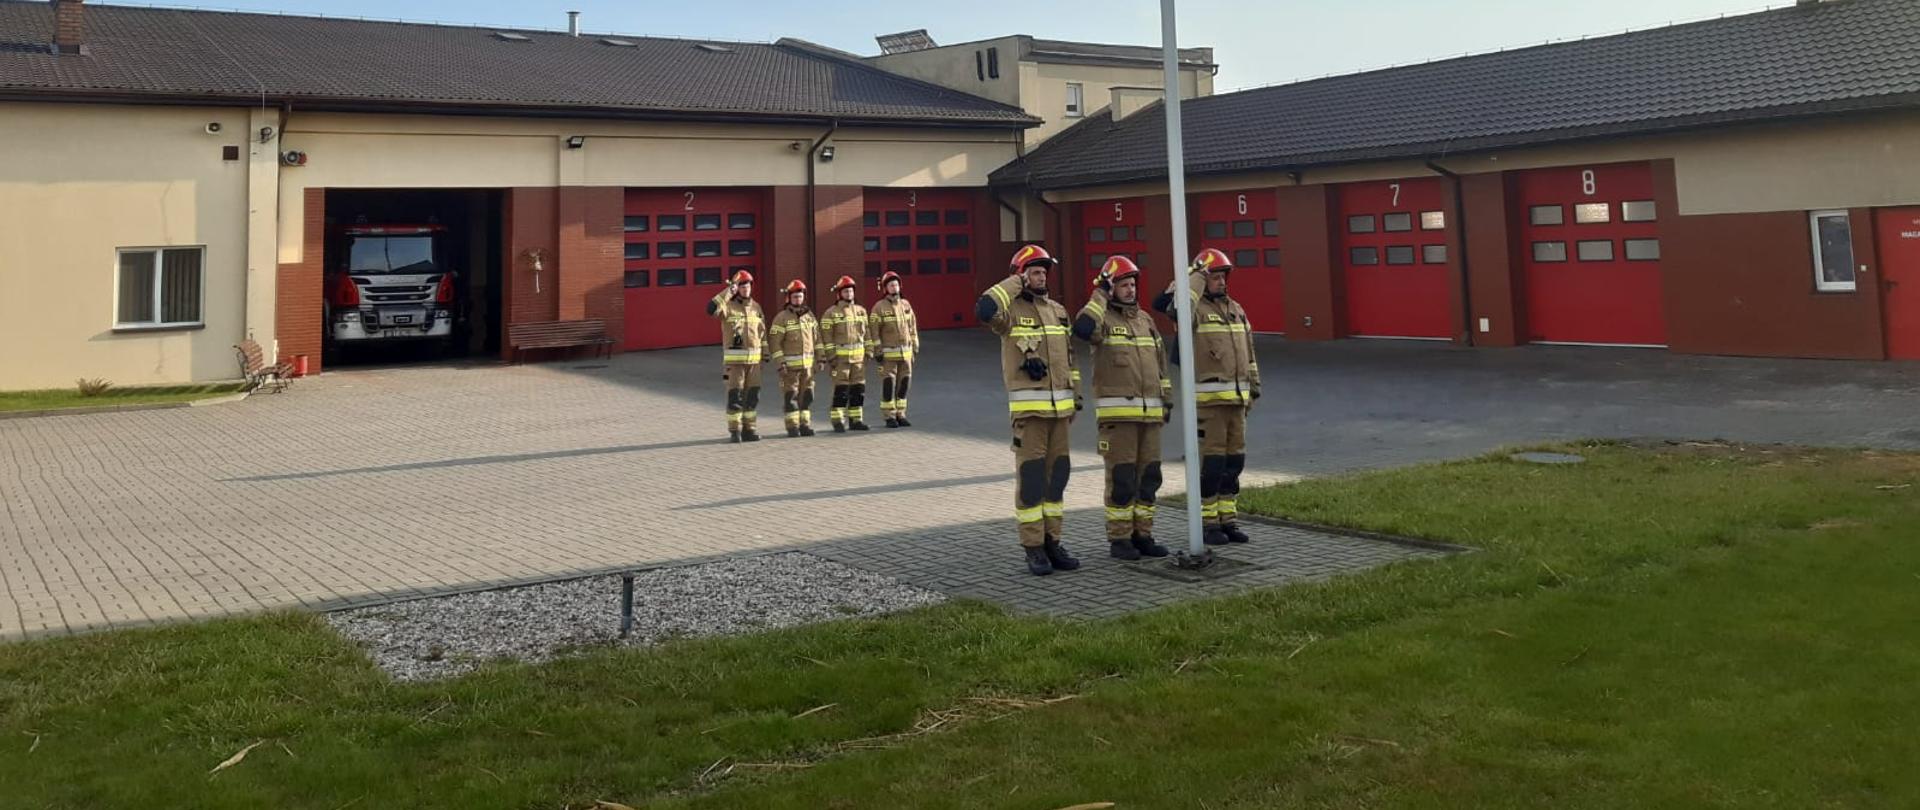 Na zdjęciu widzimy ośmiu strażaków znajdujących się na placu Komendy Powiatowej Państwowej Straży Pożarnej w Rypinie, którzy oddają honor w stronę flagi państwowej. W tle widać garaże i wóz strażacki.